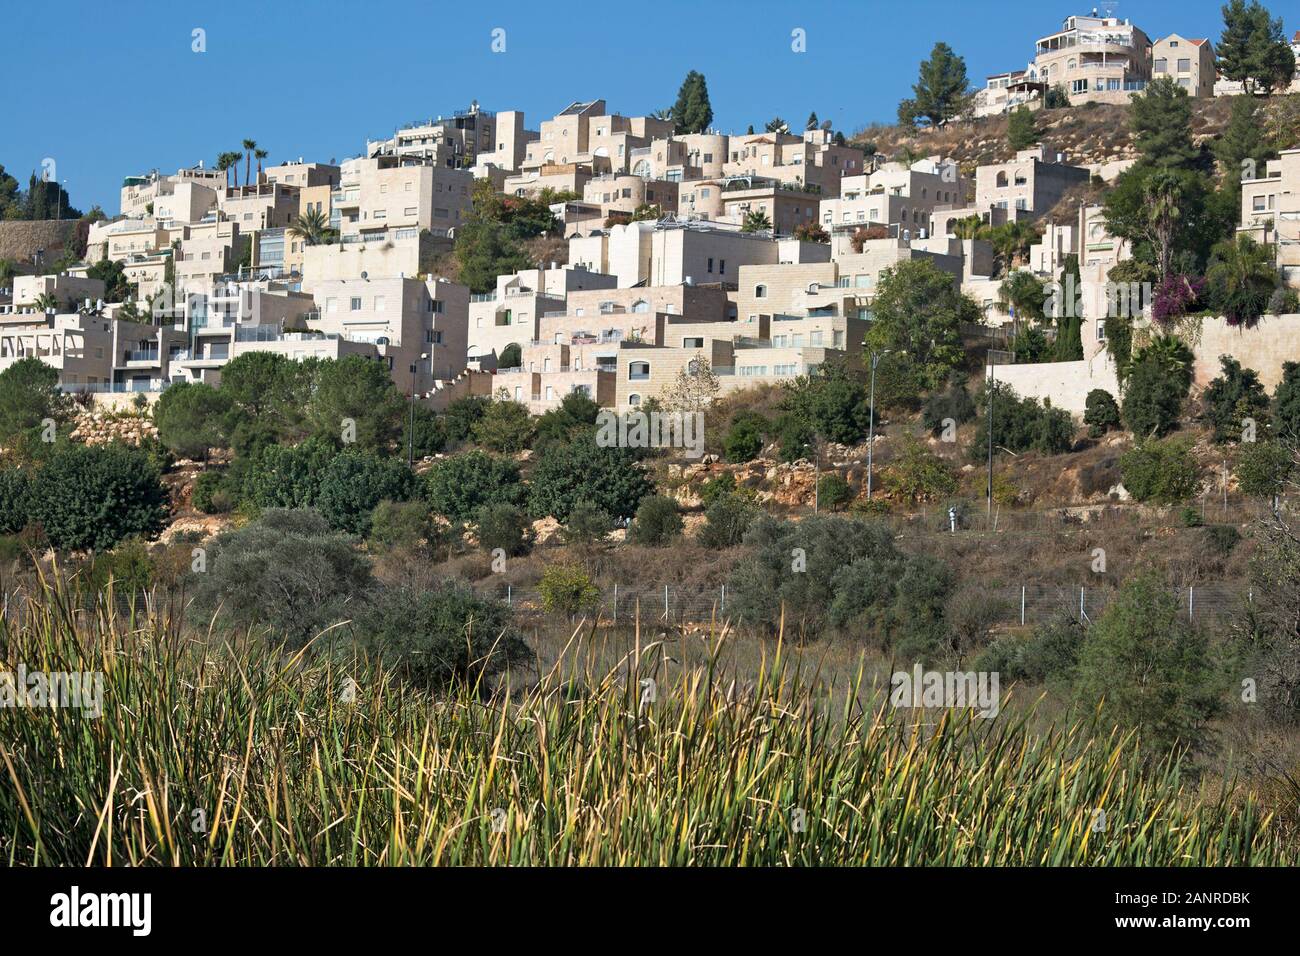 Quartier de Jérusalem Ouest construit sur une colline surplombant la vallée de Gazelle, une réserve naturelle urbaine en Israël Banque D'Images